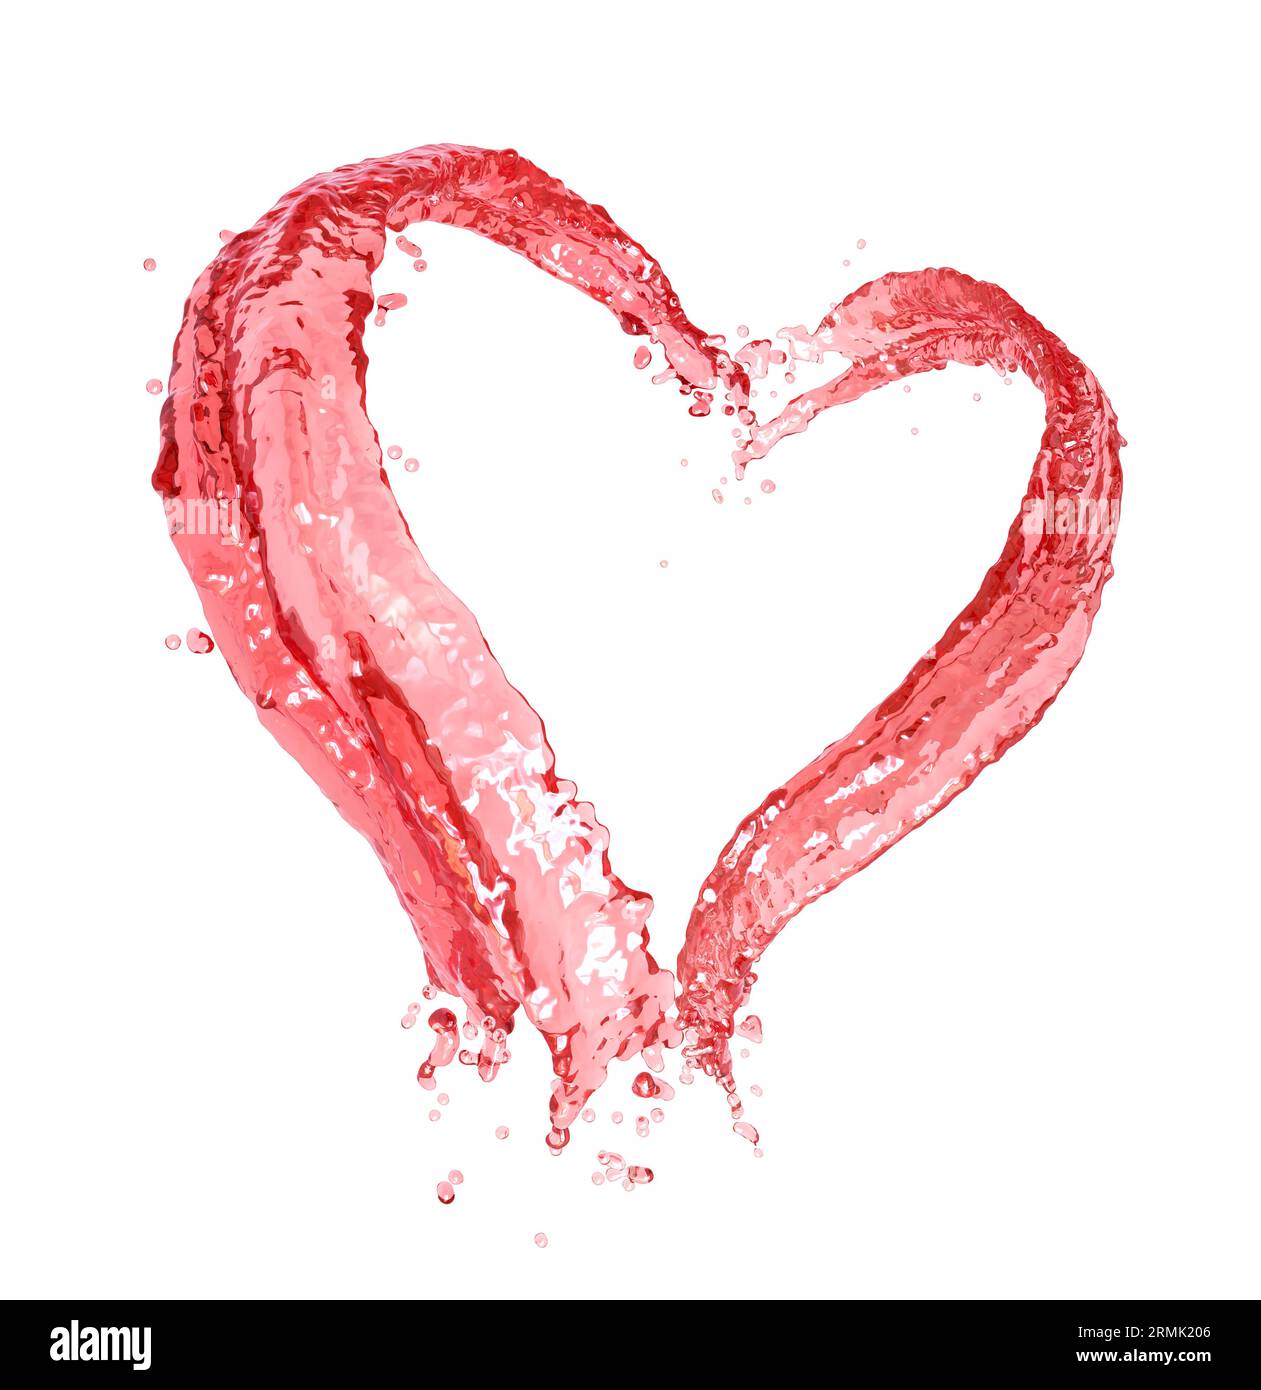 Schizzi d'acqua rossa che formano una forma di cuore isolata su sfondo bianco Foto Stock